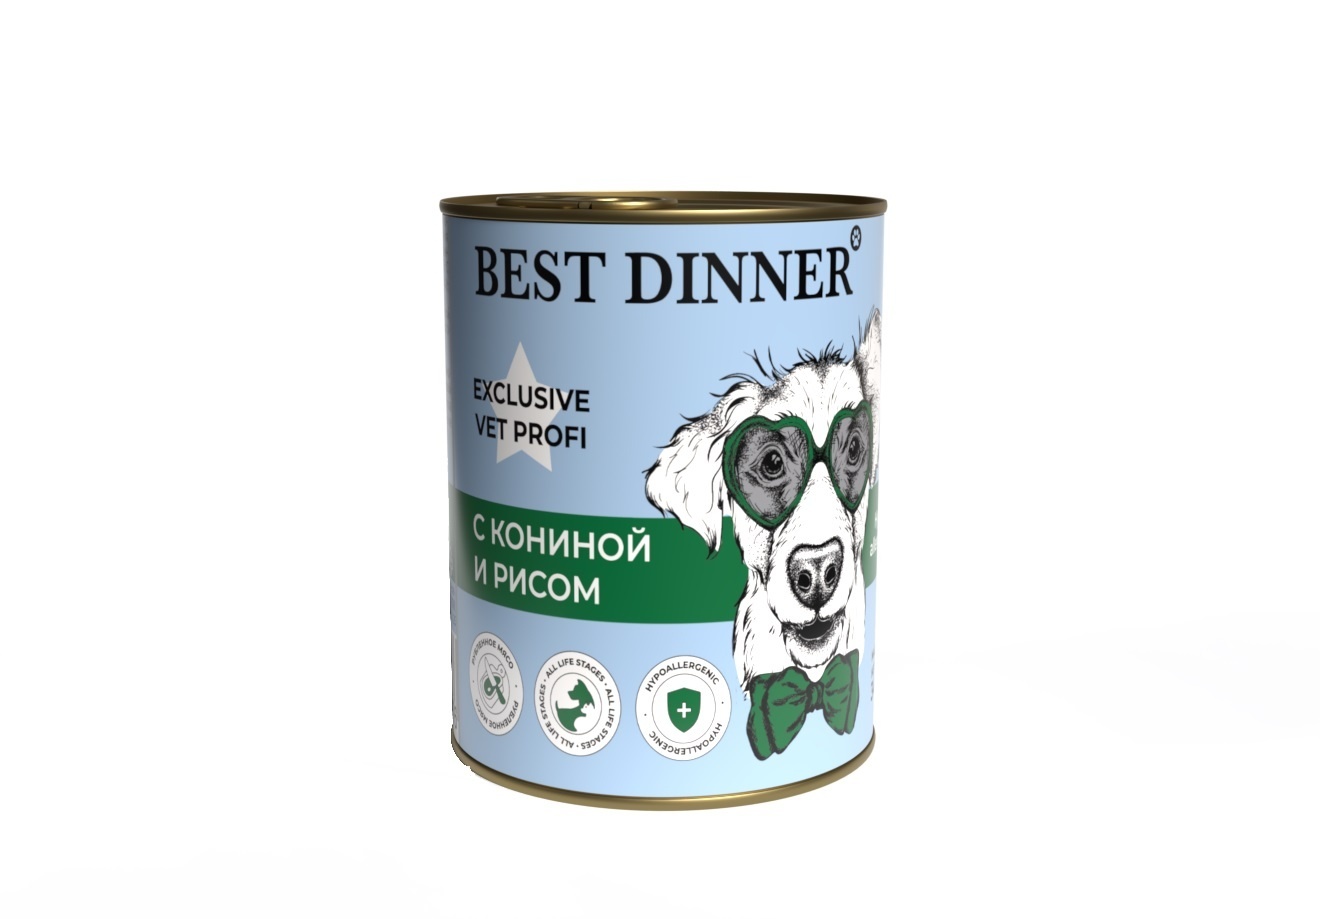 Best Dinner Best Dinner гипоаллергенные консервы С кониной и рисом для собак всех пород (340 г) 42019